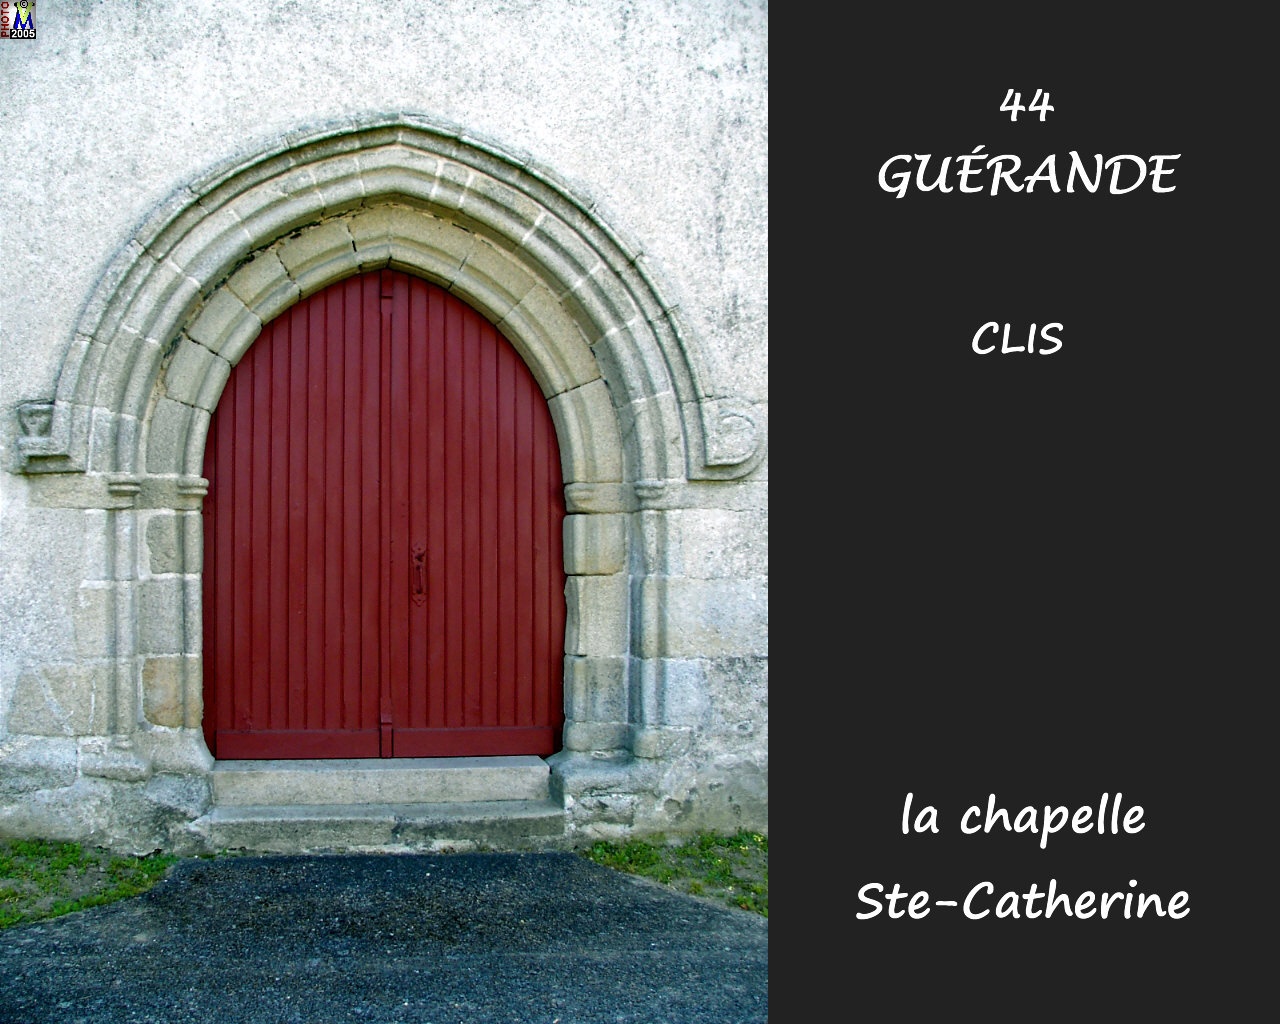 44GUERANDE--CLIS_chapelle_104.jpg